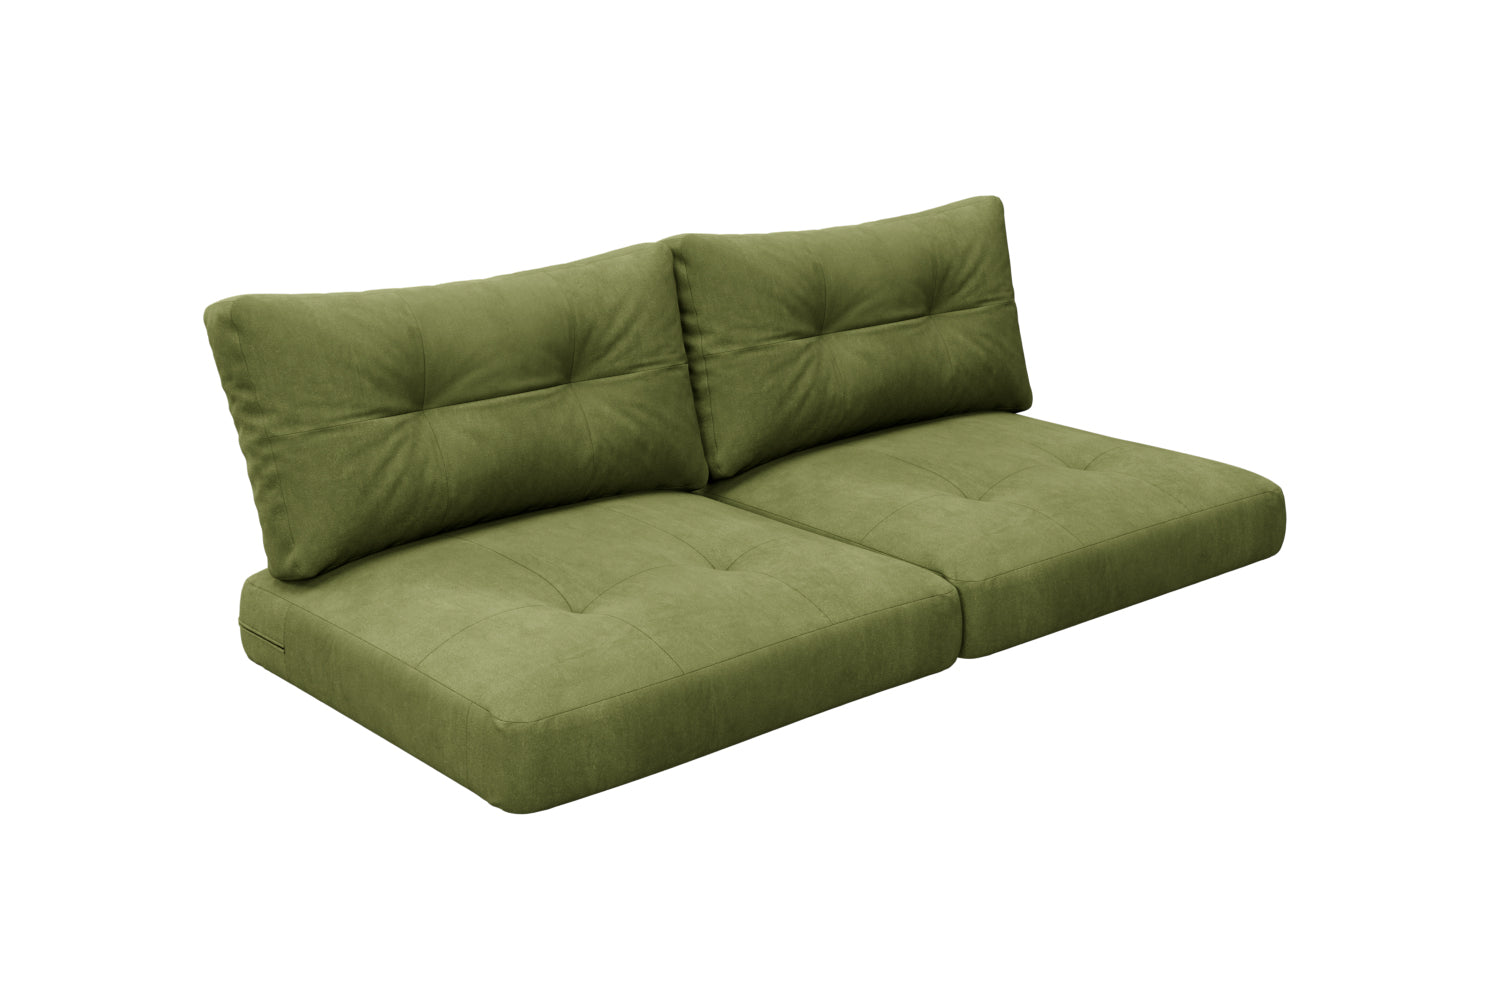 Sofa Back Cushion -  Hong Kong